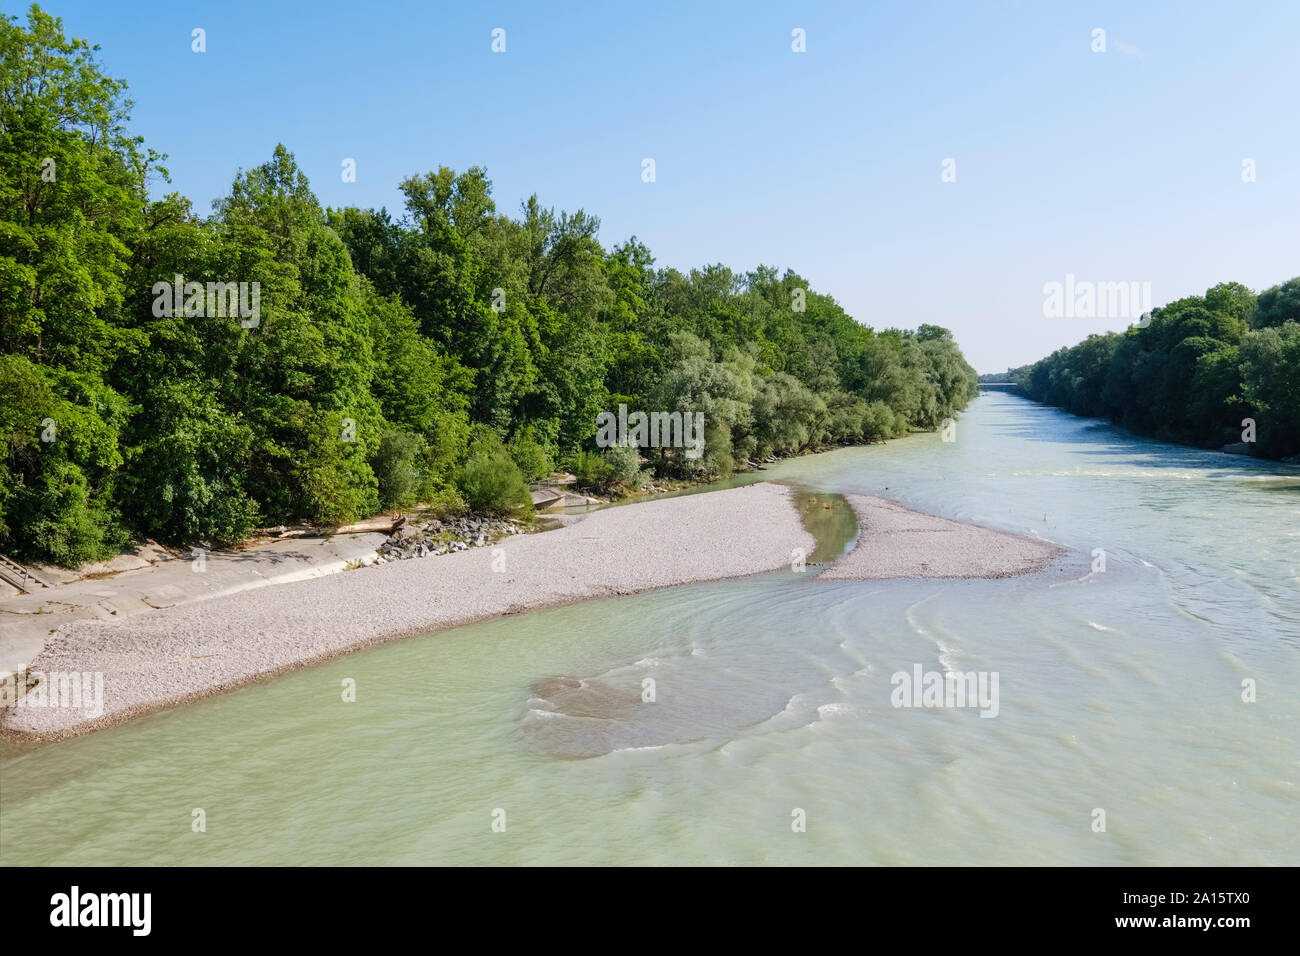 Germany, Upper Bavaria, Isar river Stock Photo